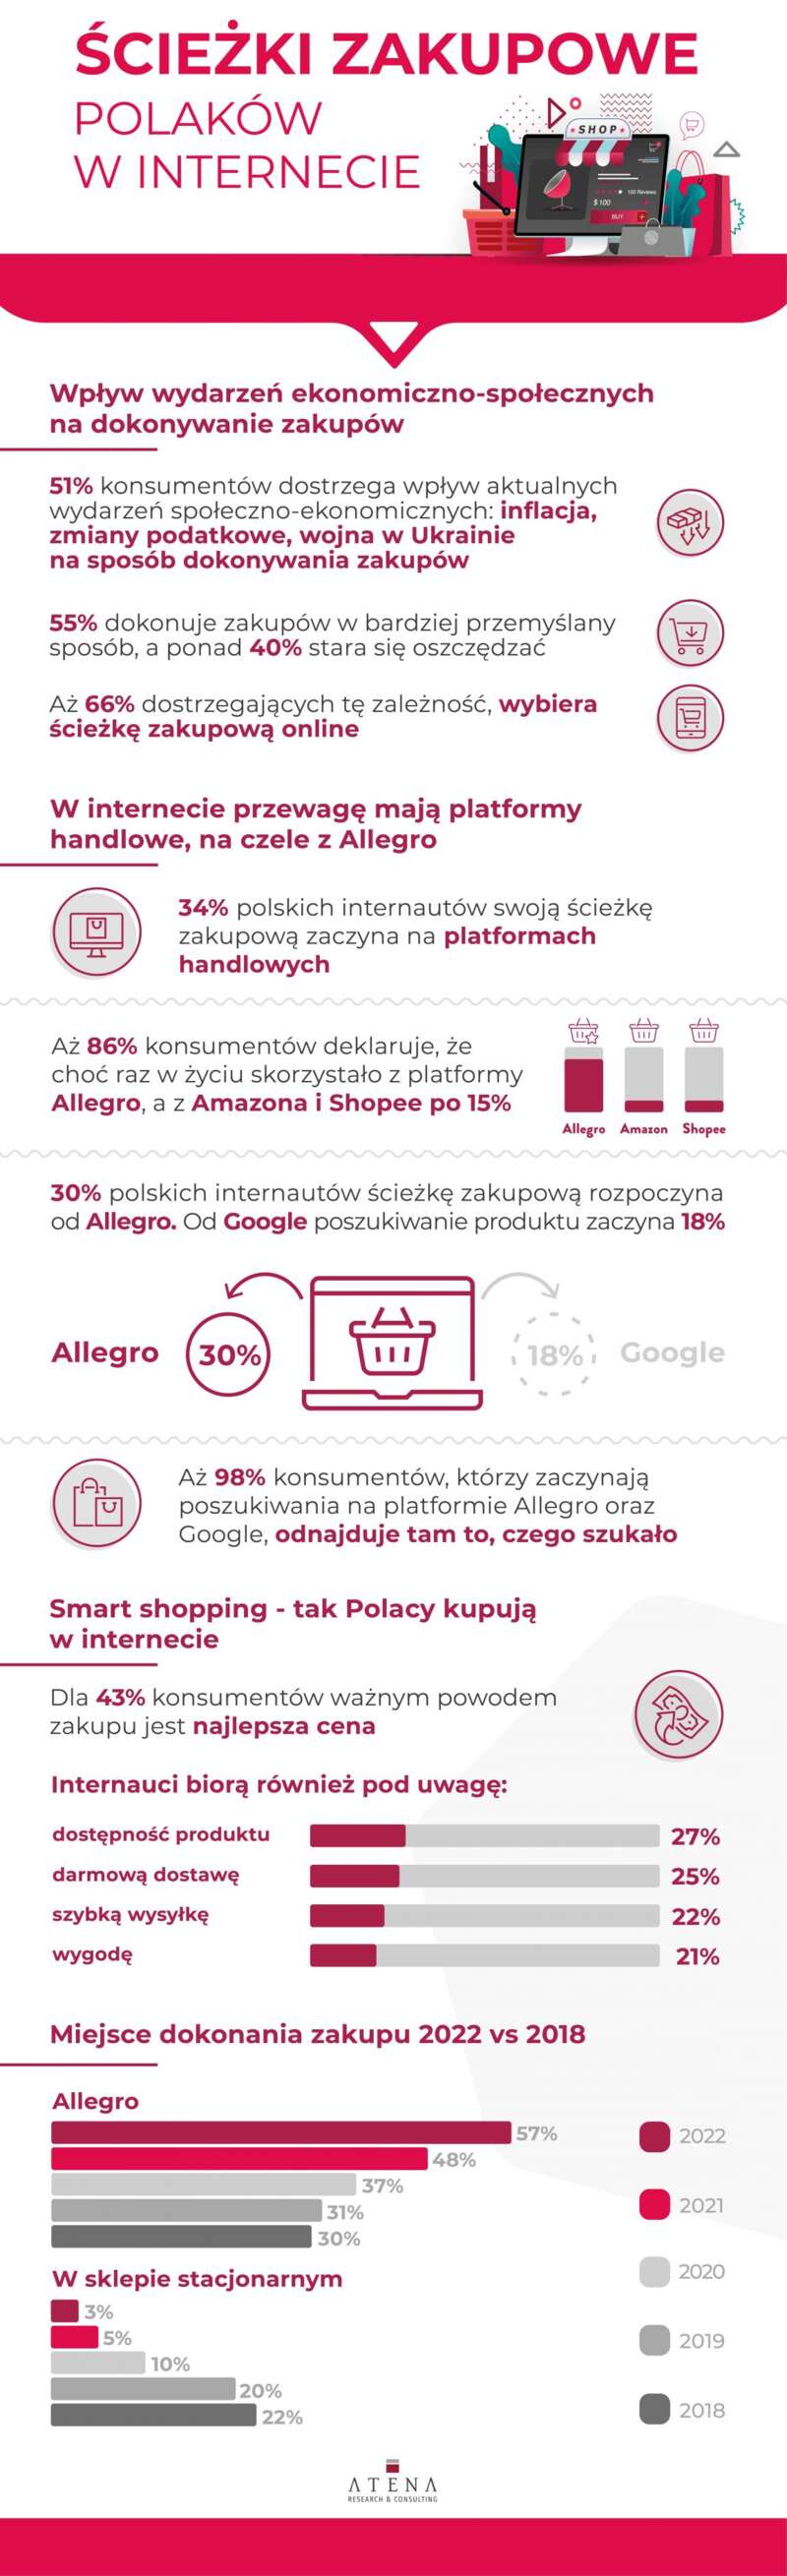 sciezki-zakupowe-polakow-w-internecie-2022_infografika-1152x3770